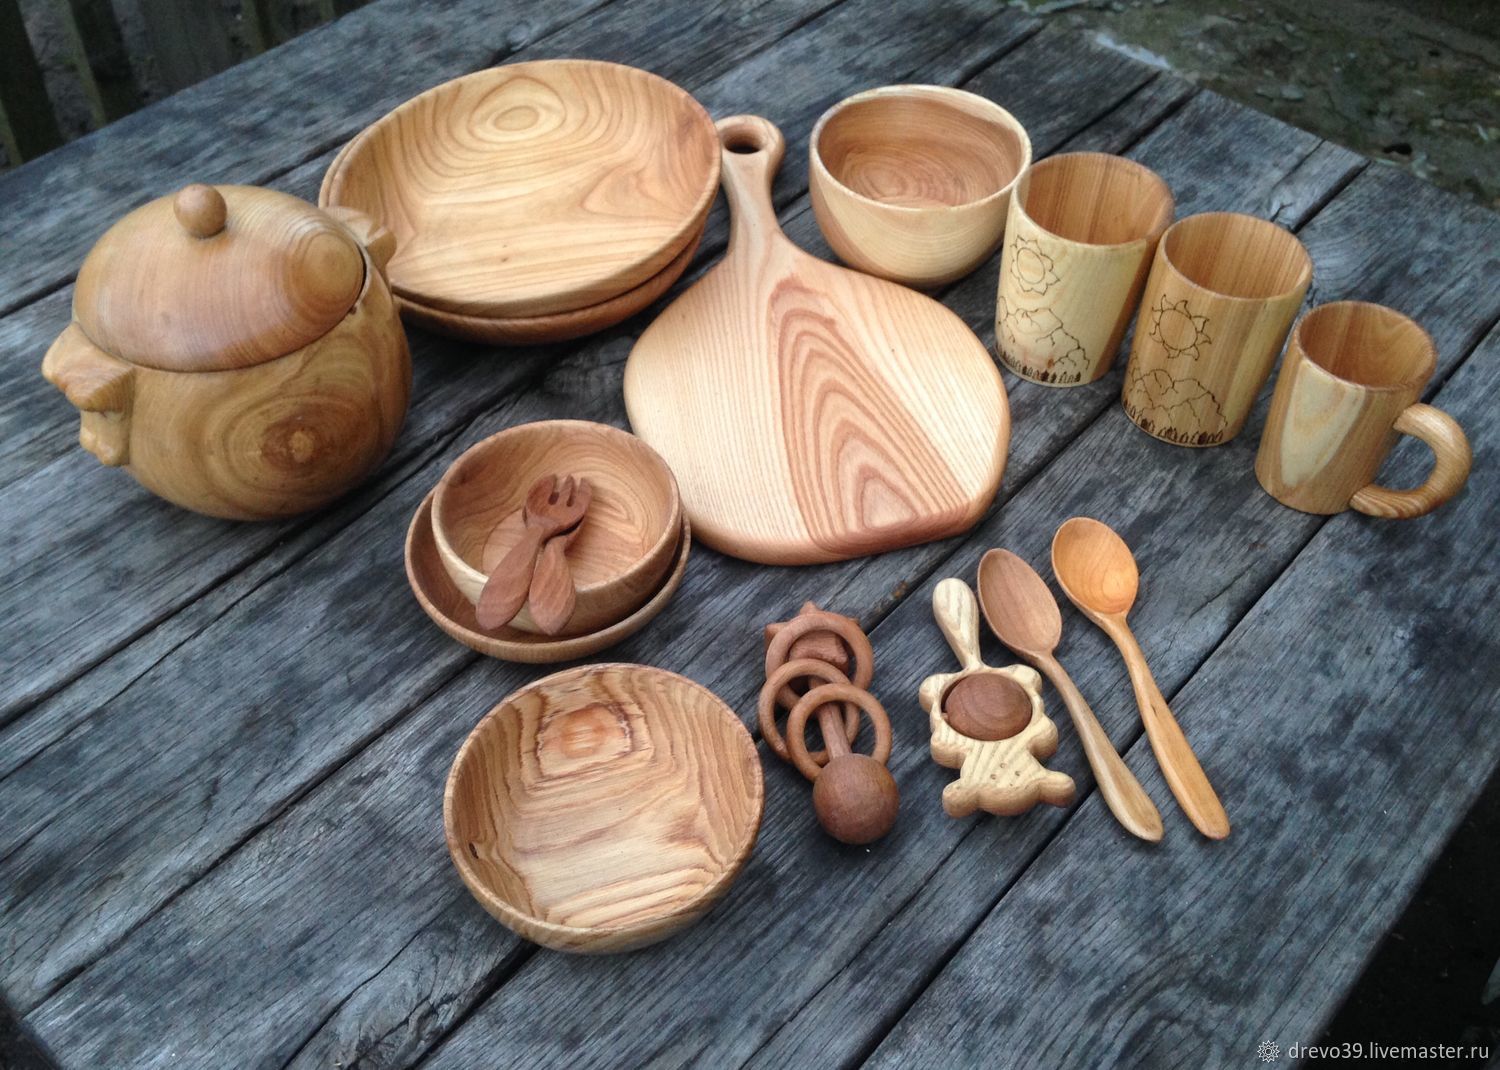 Wooden ru. Посуда из дерева. Кухонная утварь из дерева. Изделия из древесины. Деревянная кухонная посуда.